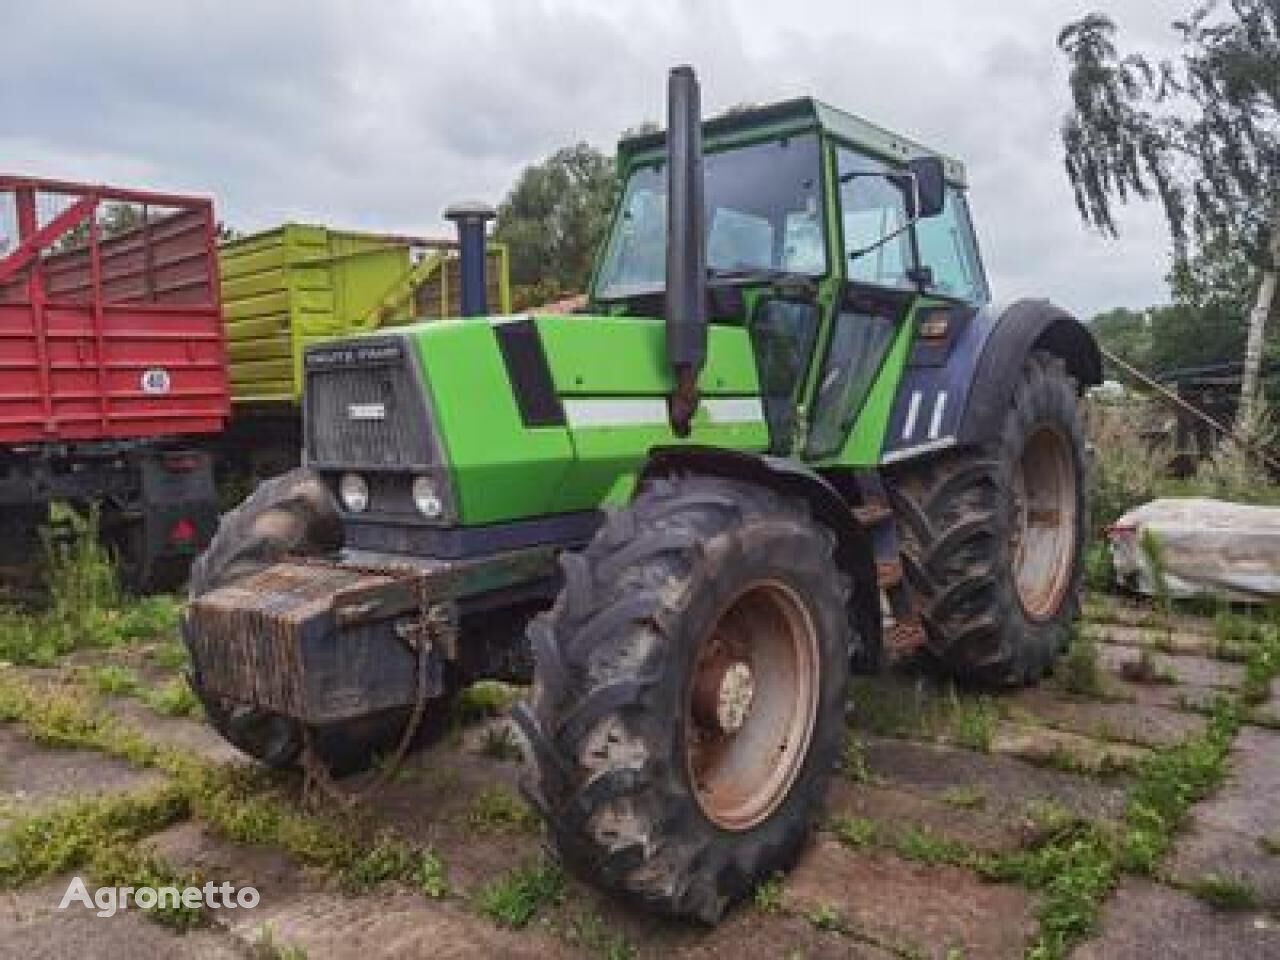 Deutz-Fahr DX 6.50 wheel tractor